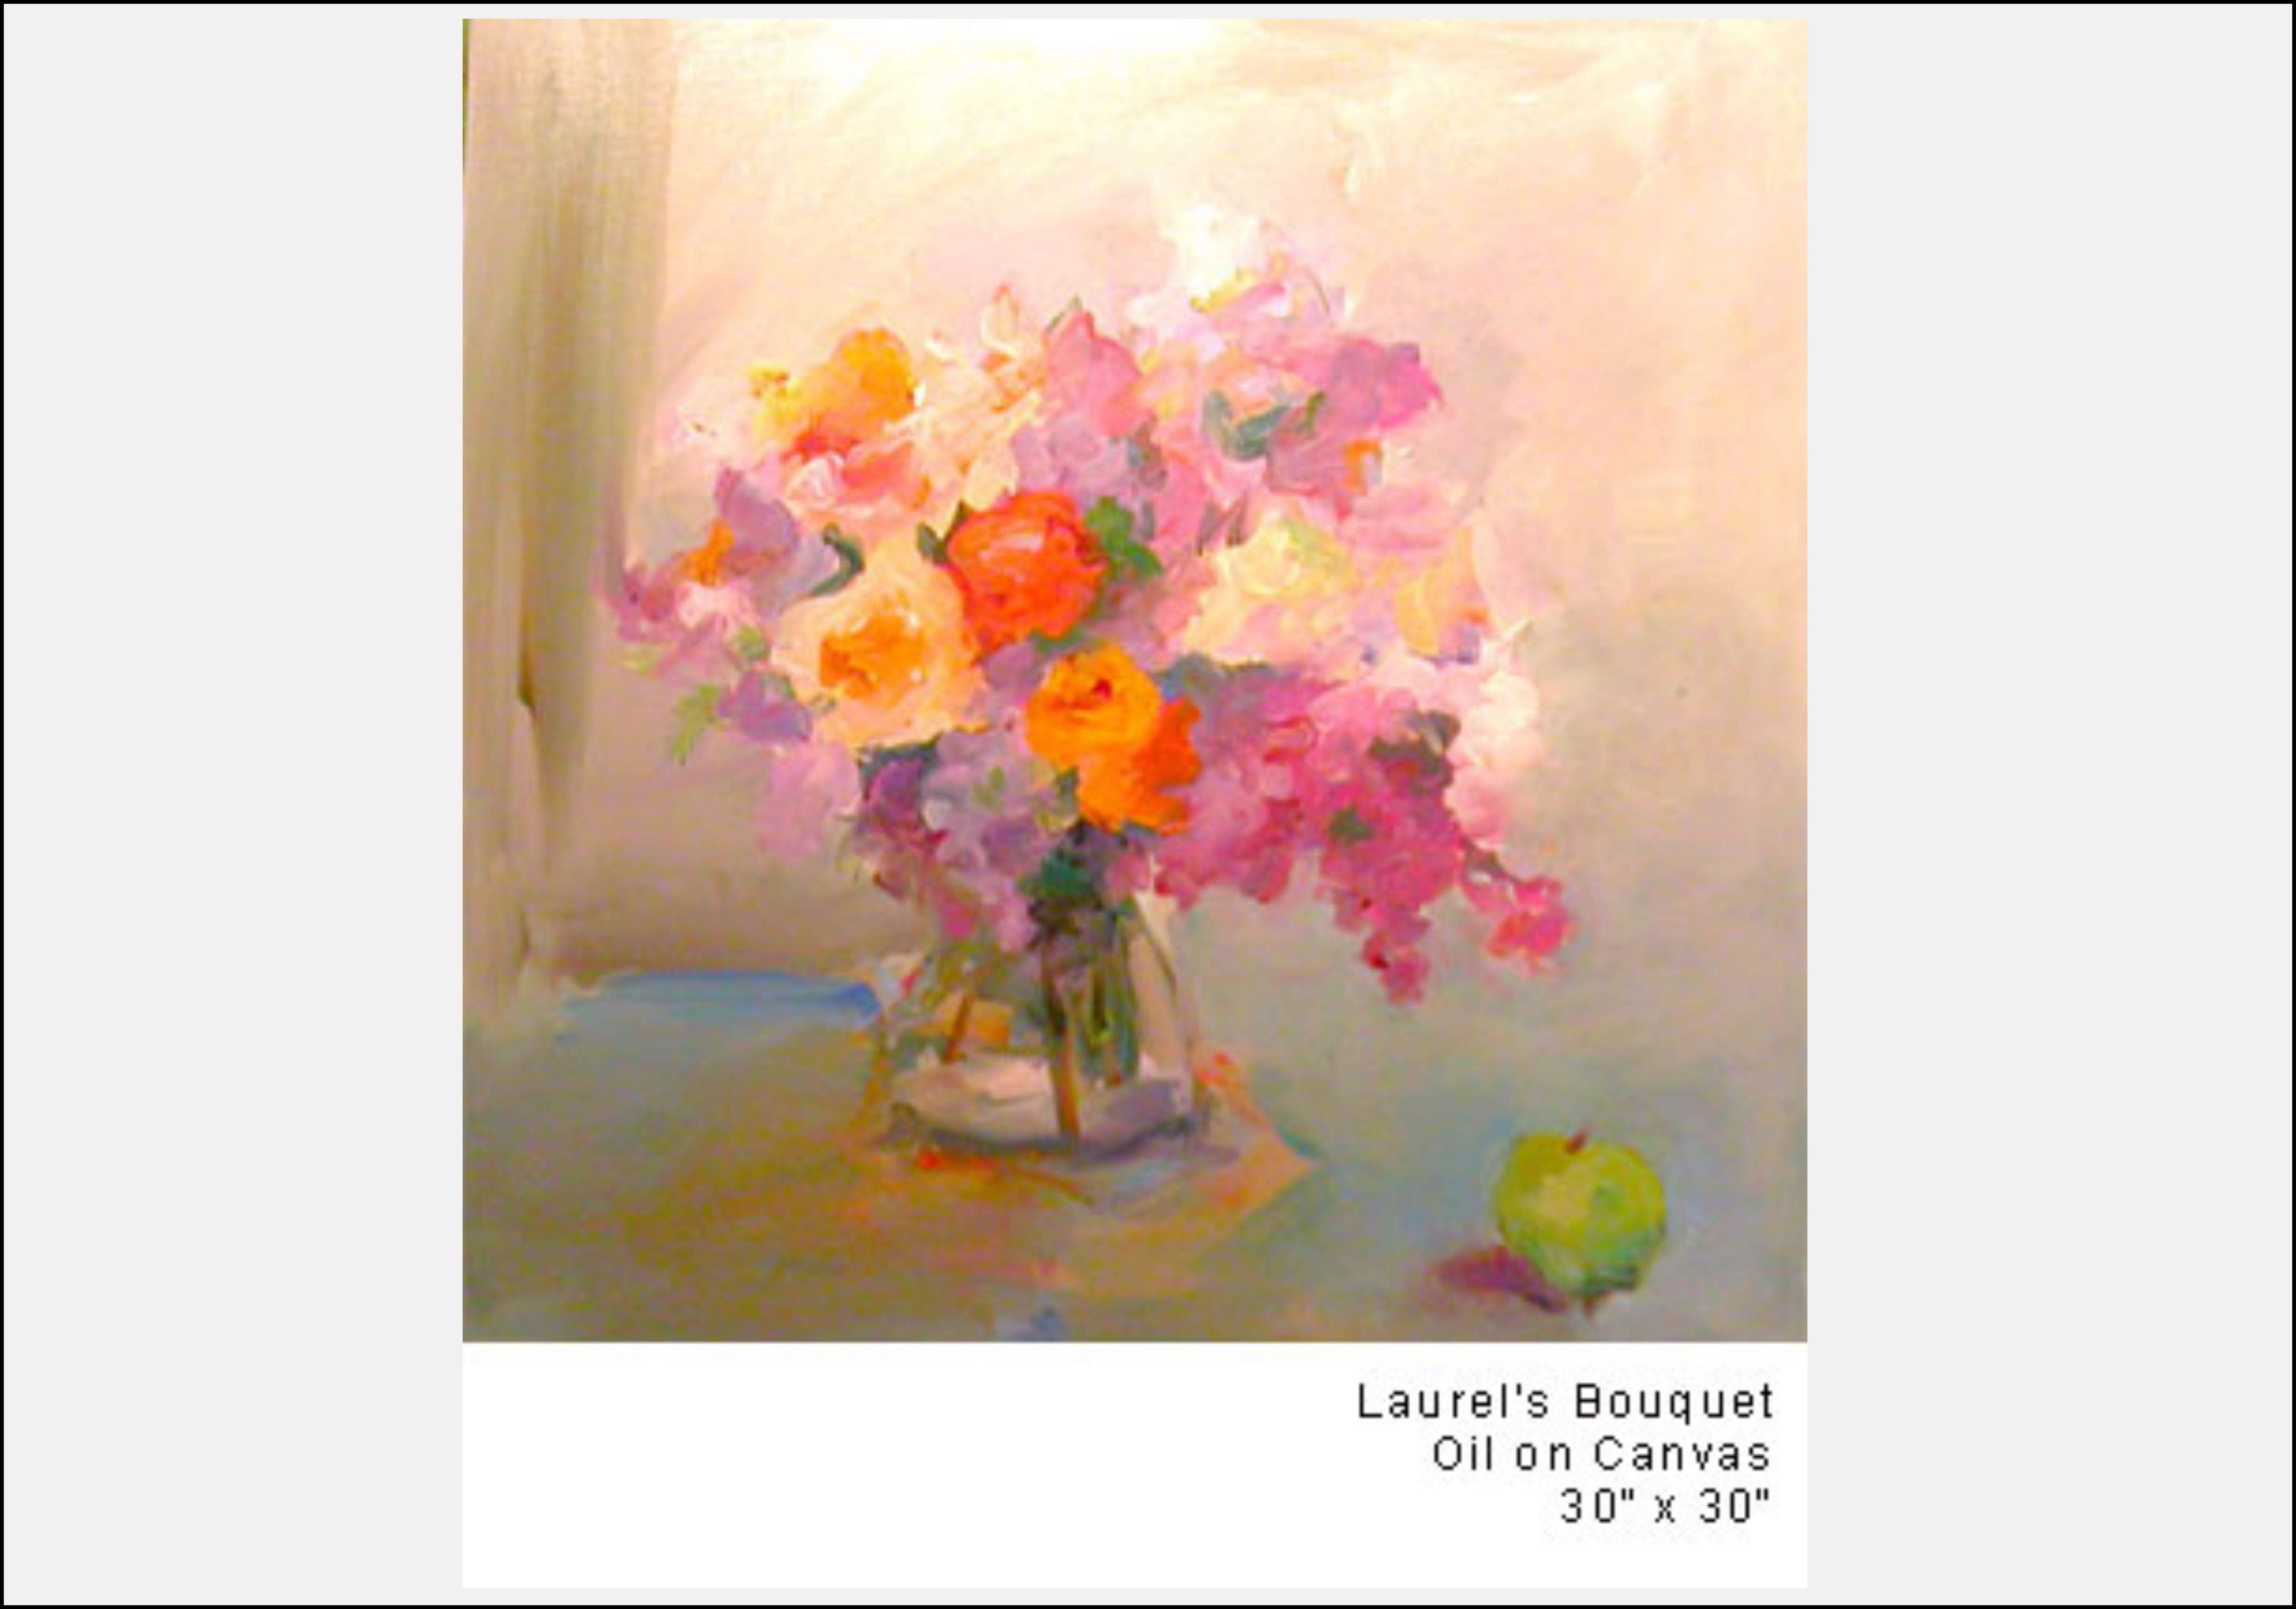 Laurel's Bouquet